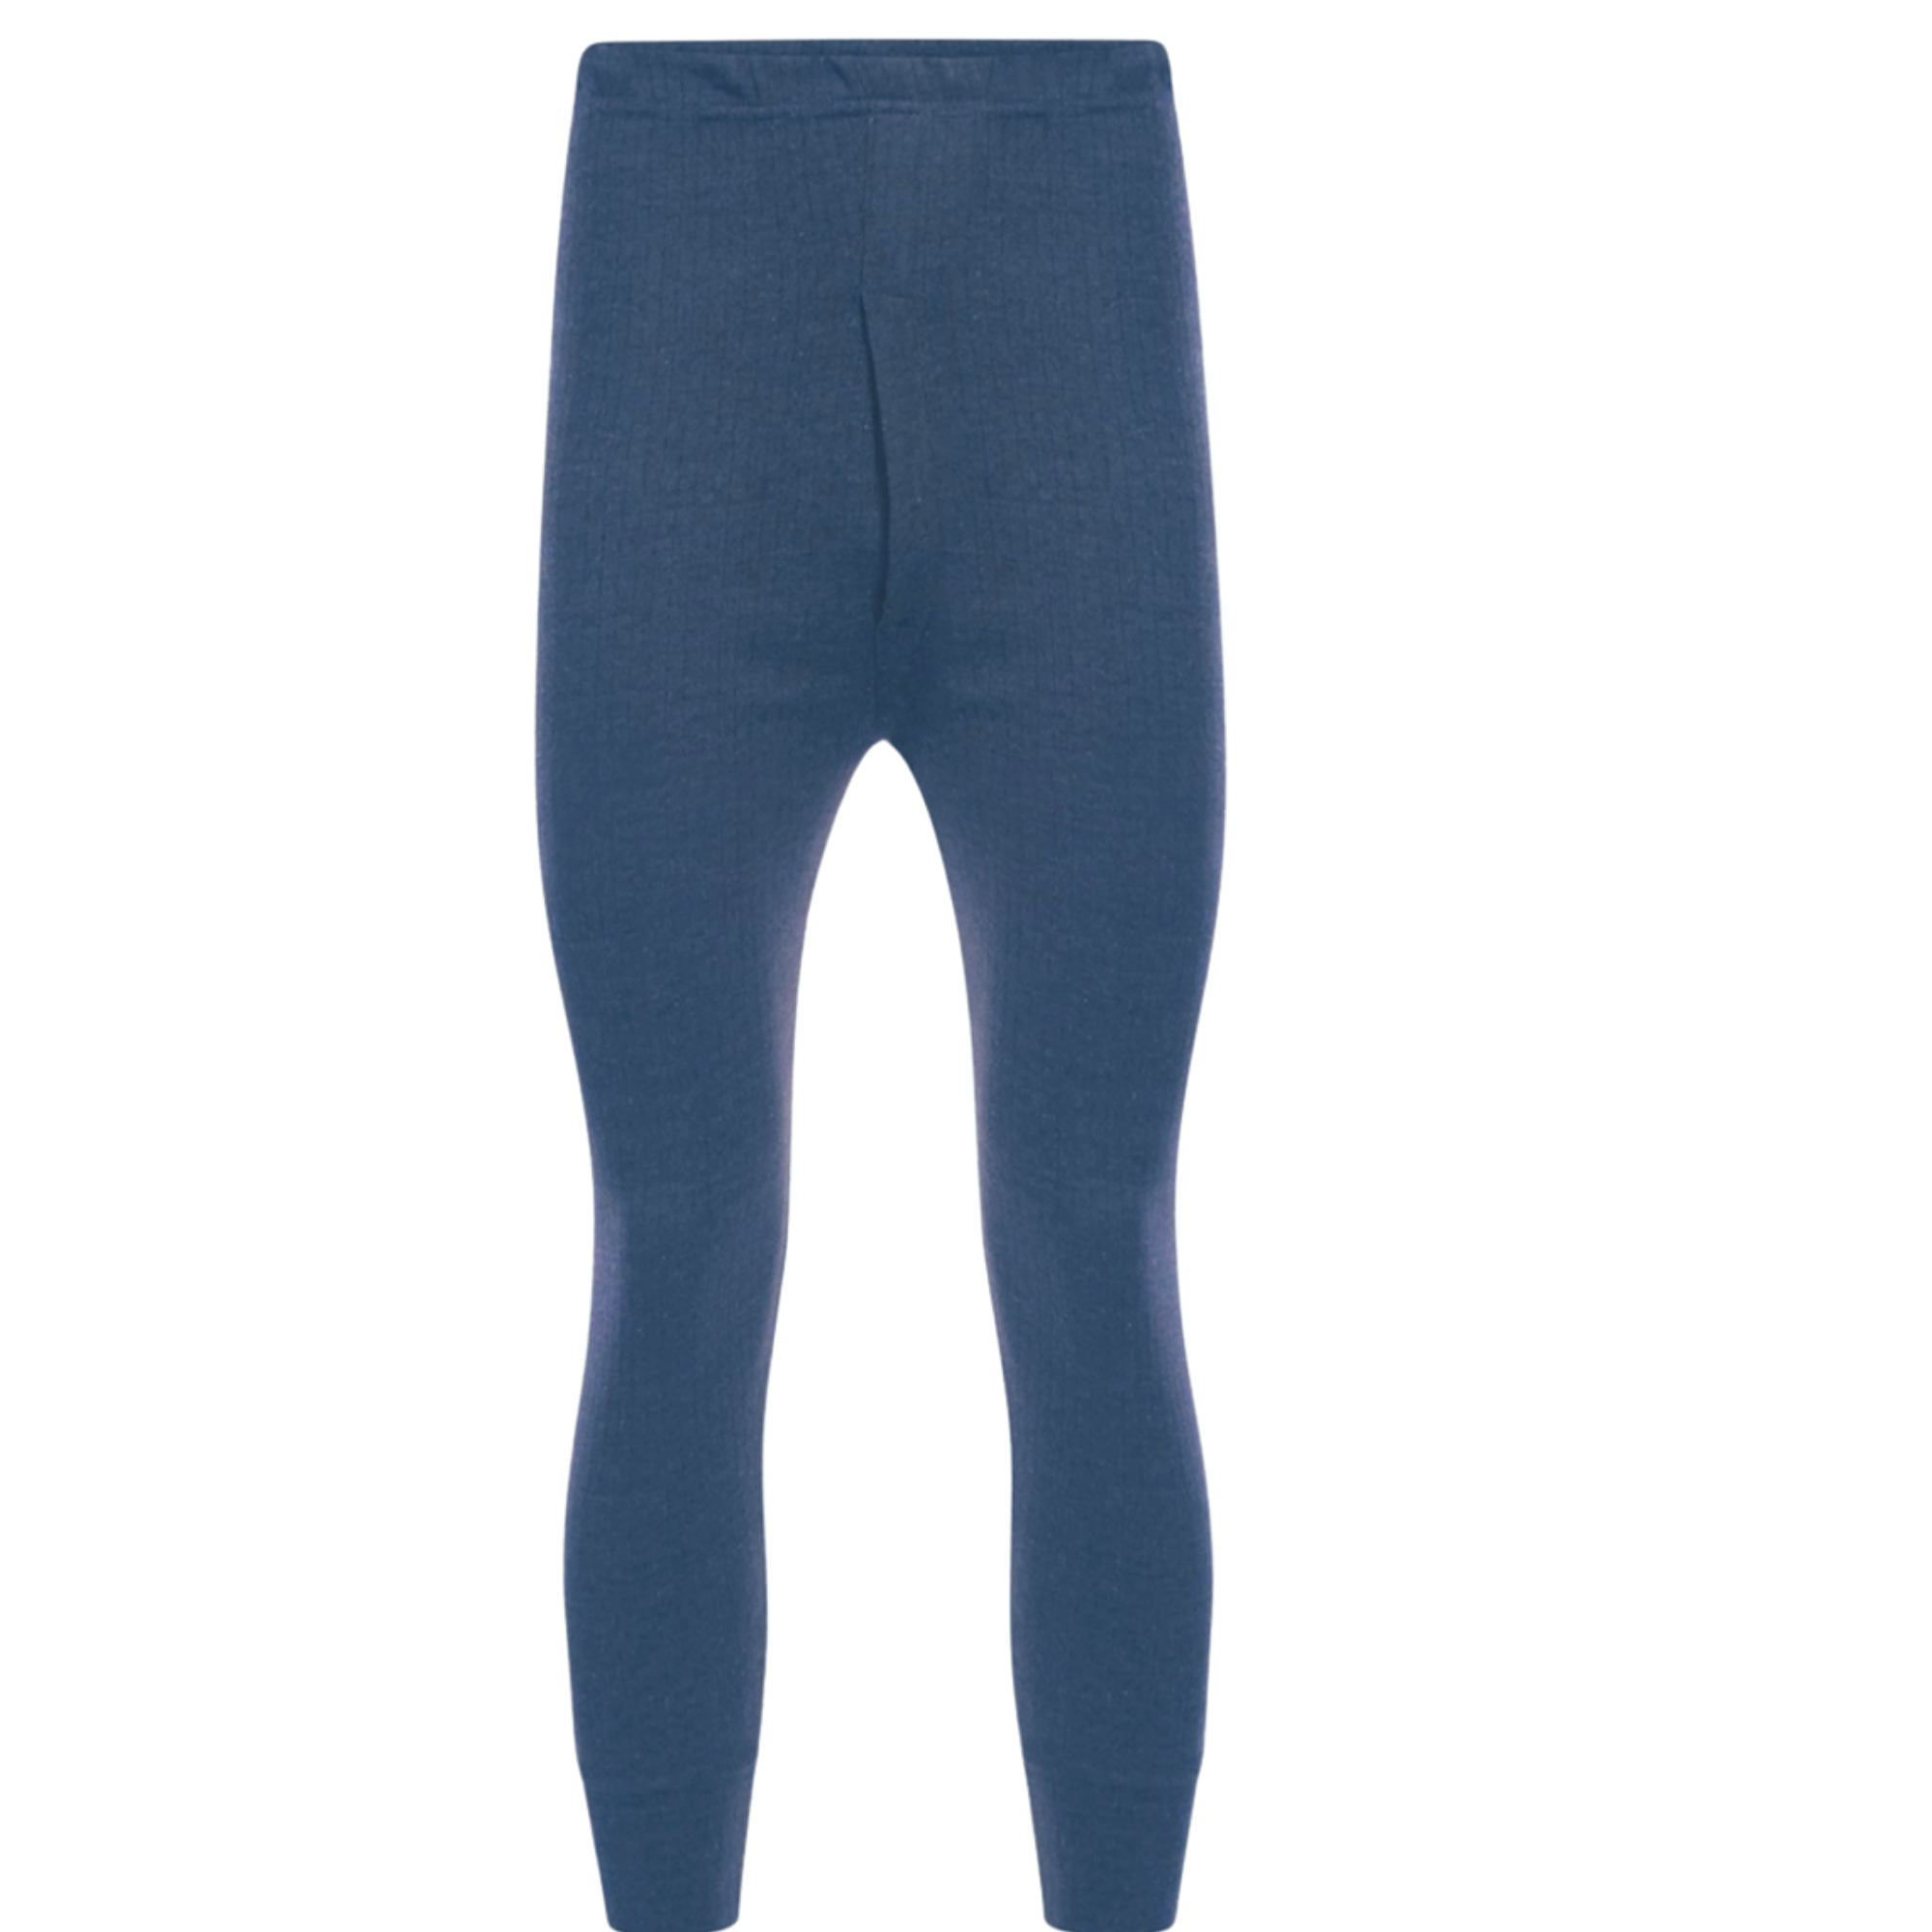 Men's Premium Thermal Trouser (blue)